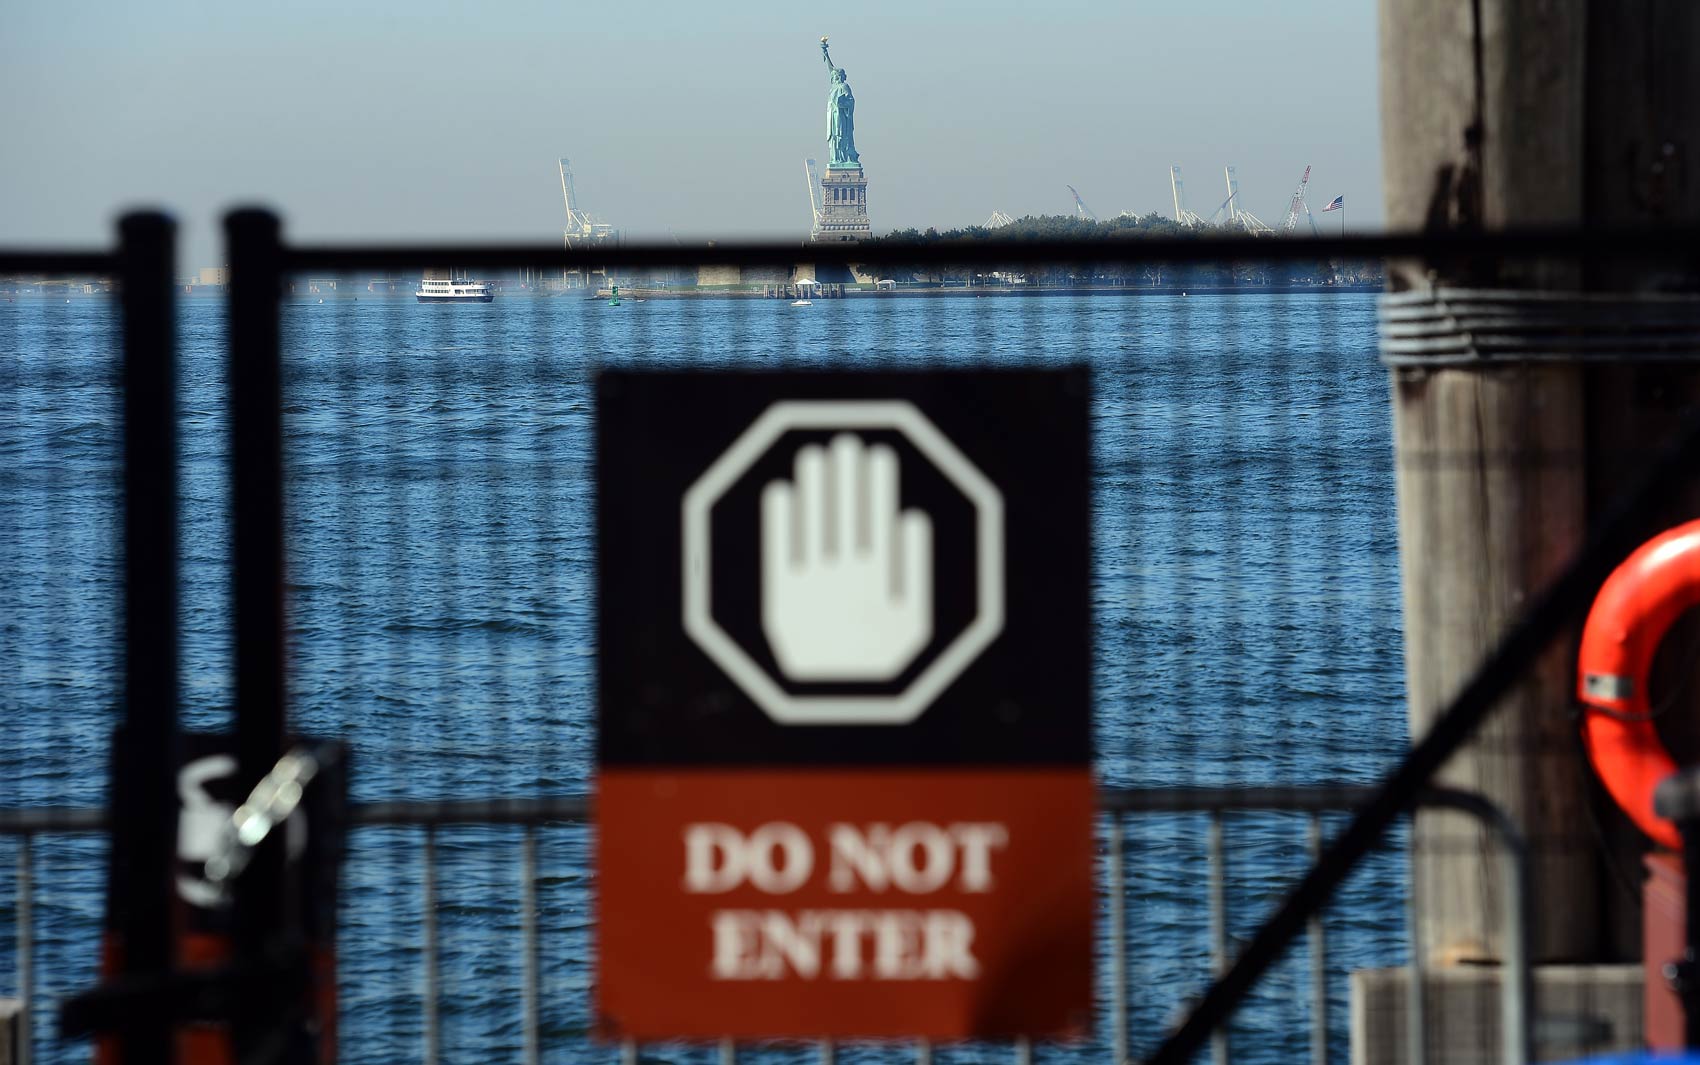 Sem visitantes na pequena ilha ao sul de Manhattan, a Estátua da Liberdade é vista de longe depois de ser fechada devido ao impasse no Congresso dos EUA quanto ao orçamento